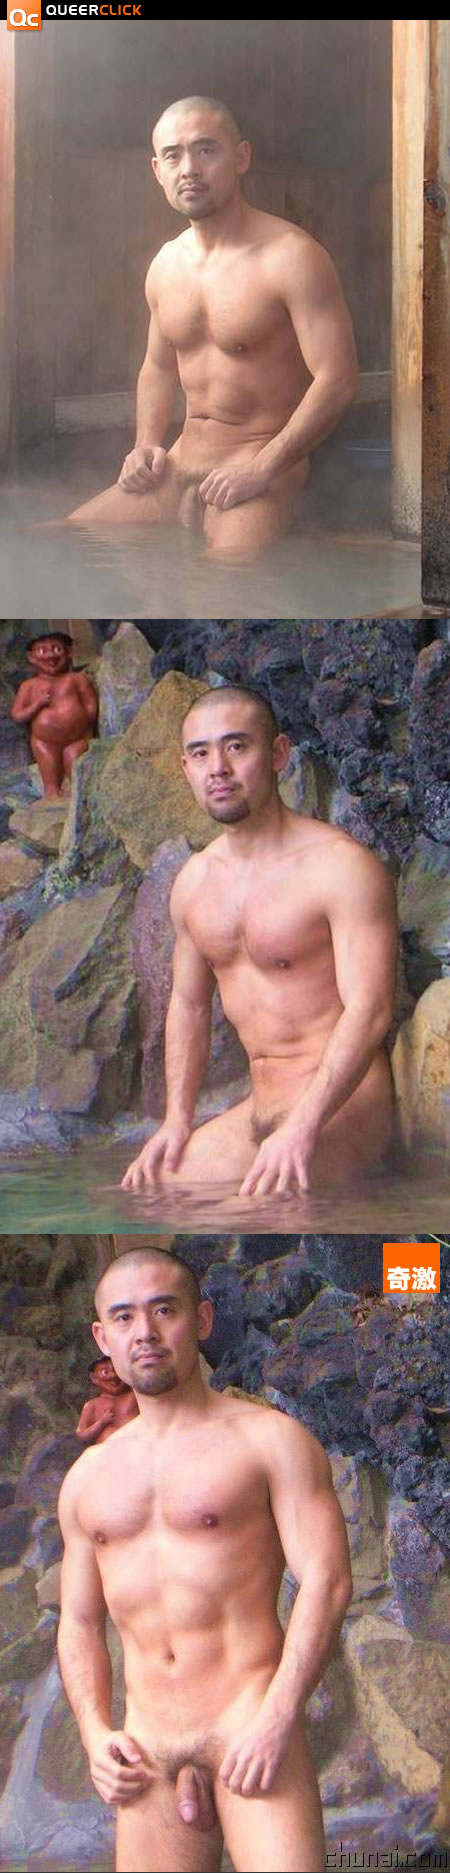 溫泉裸男 Queerclick